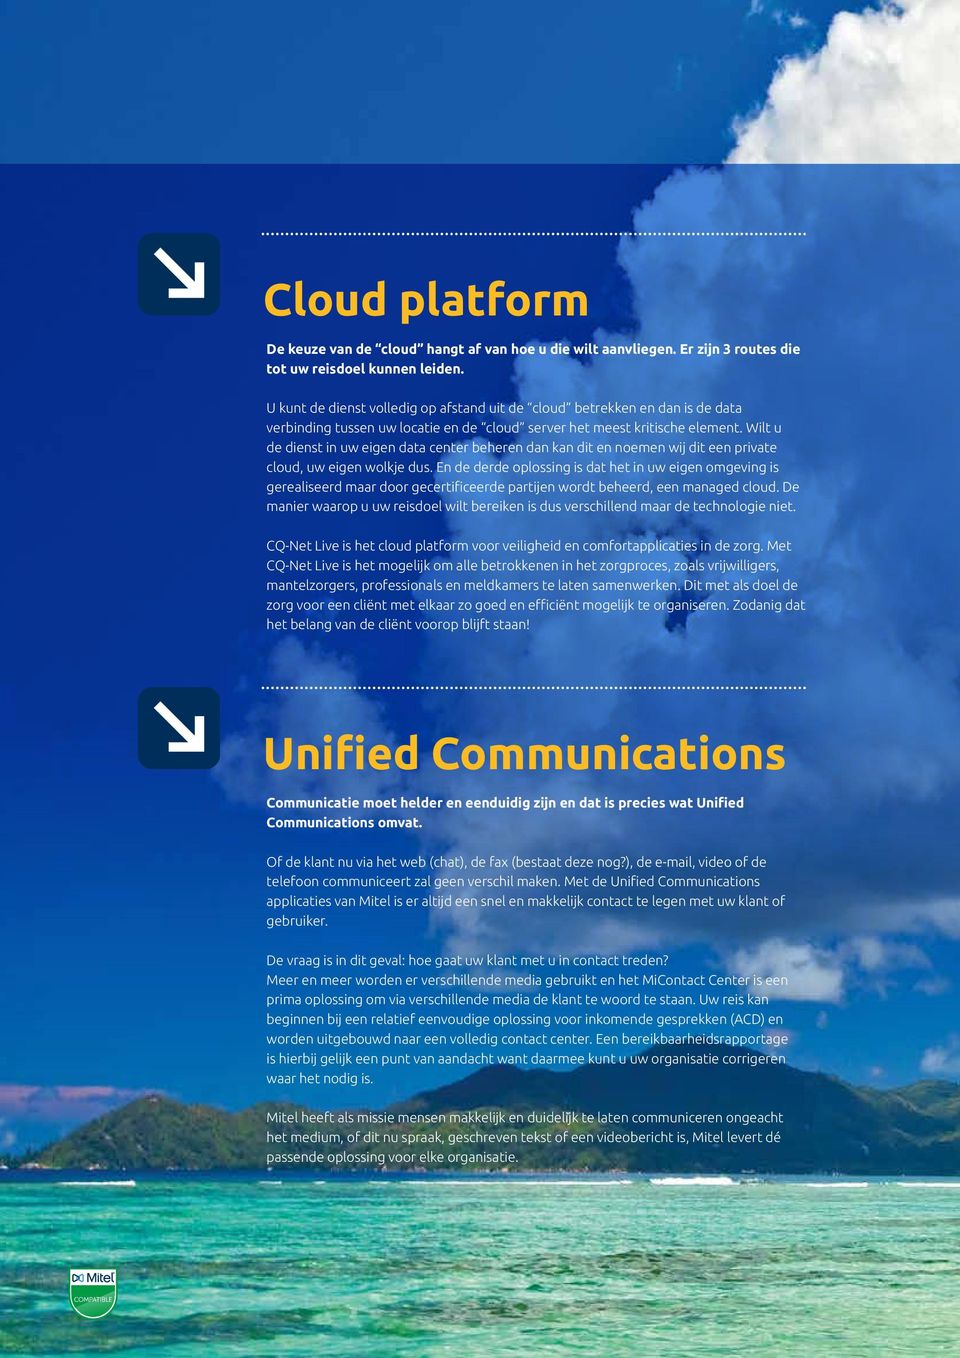 Wilt u de dienst in uw eigen data center beheren dan kan dit en noemen wij dit een private cloud, uw eigen wolkje dus.